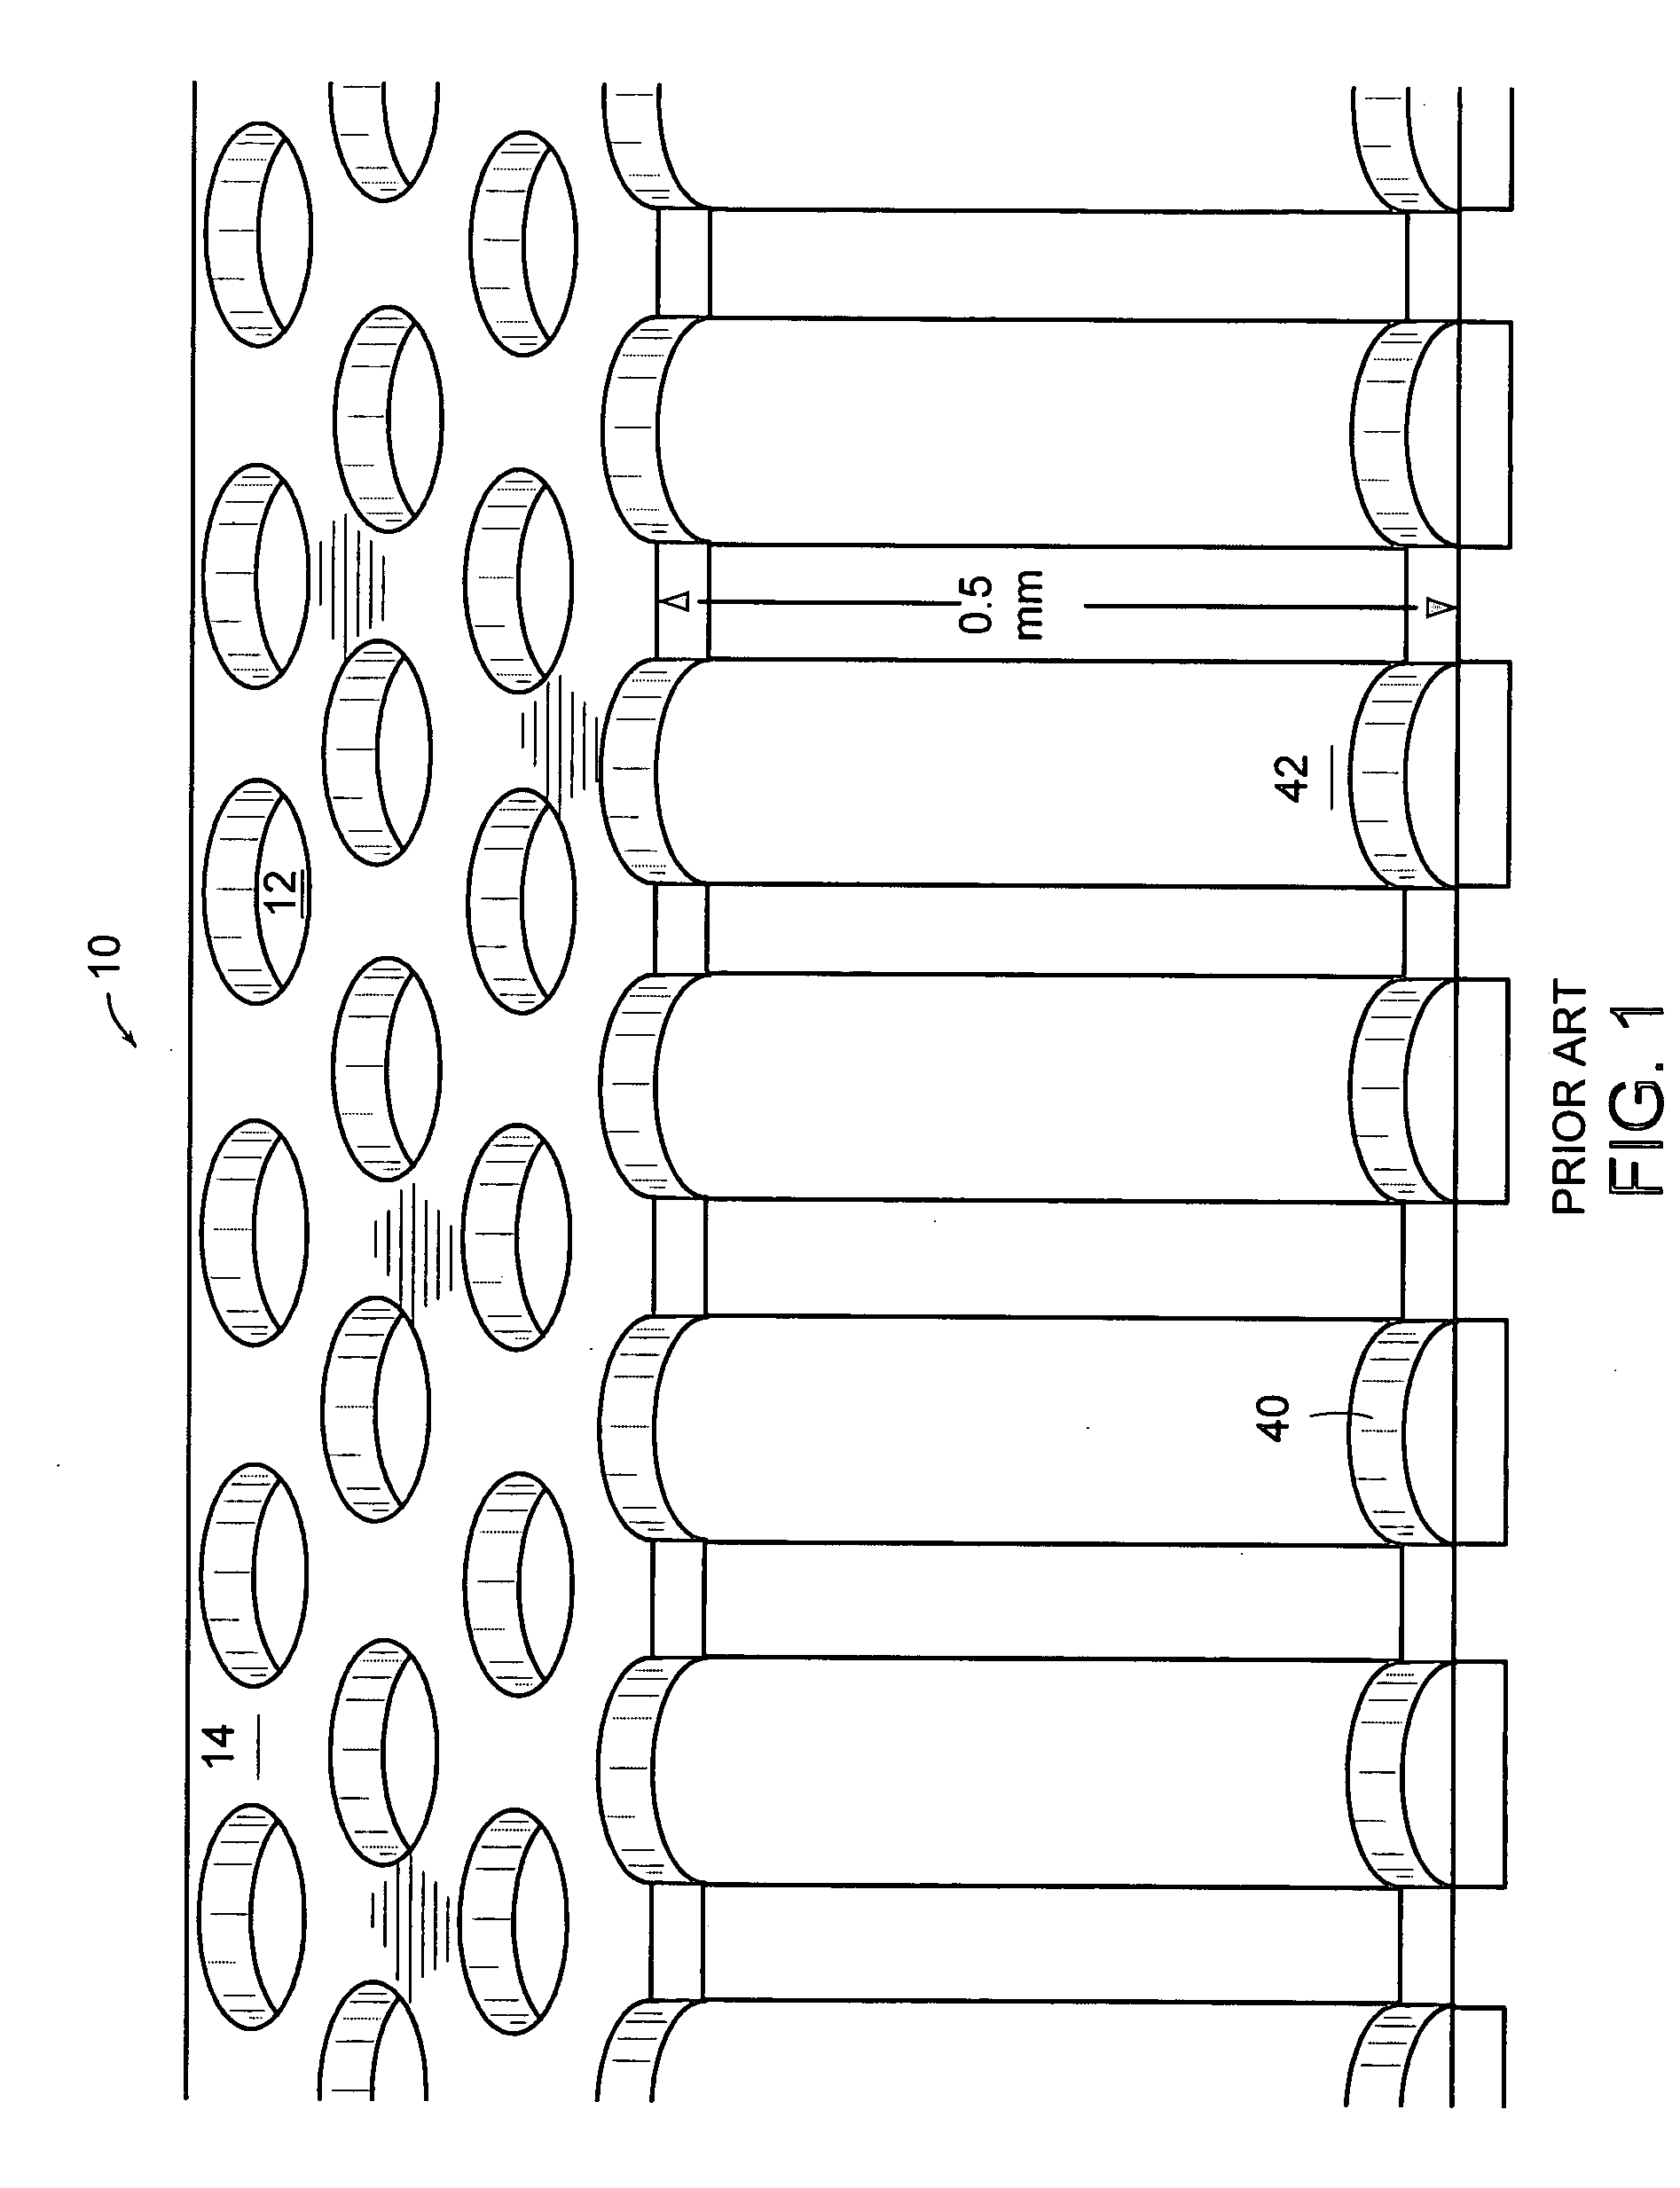 Nanoliter array loading